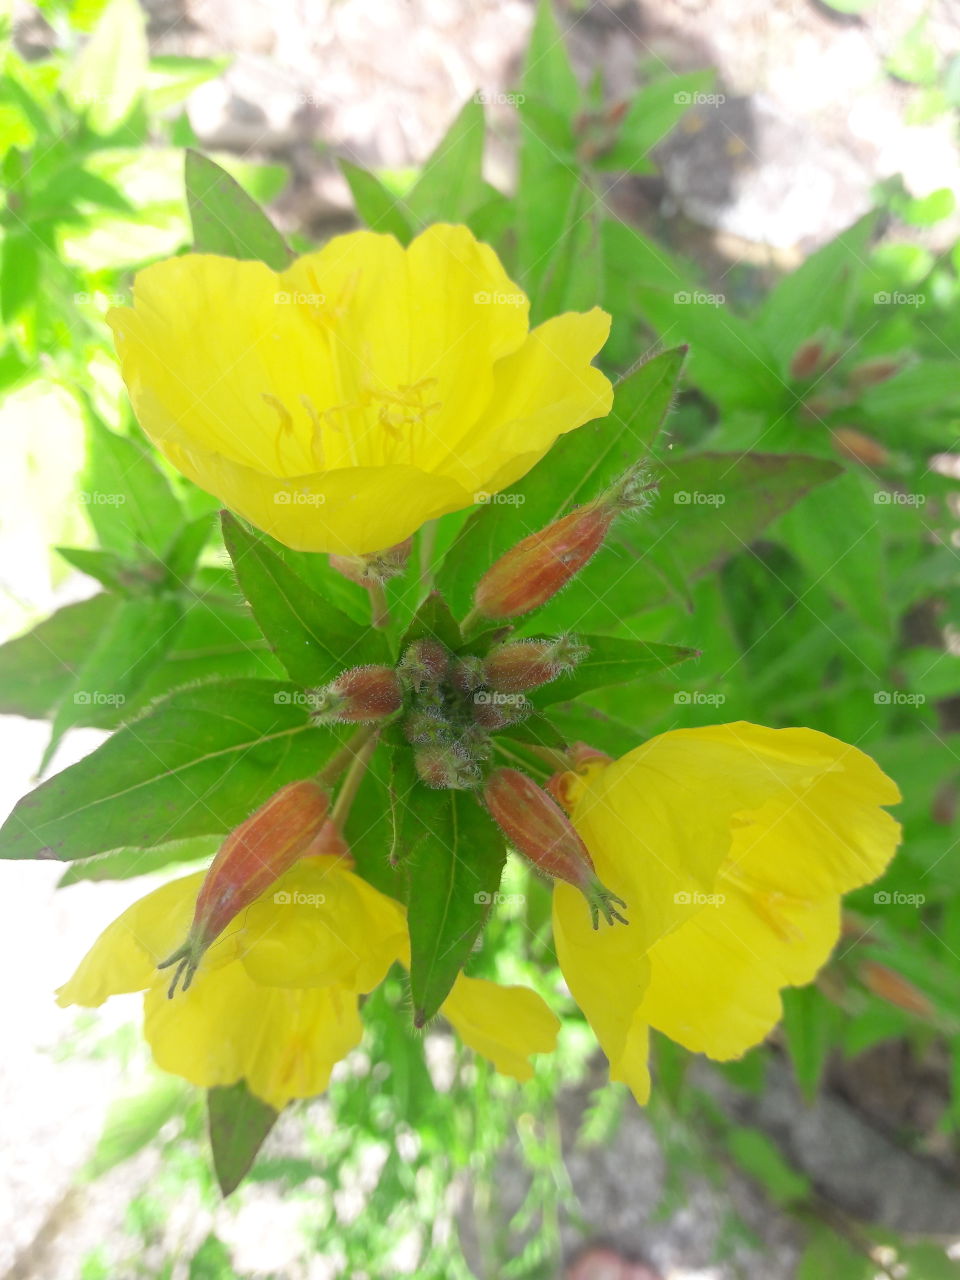 New flower in my garden